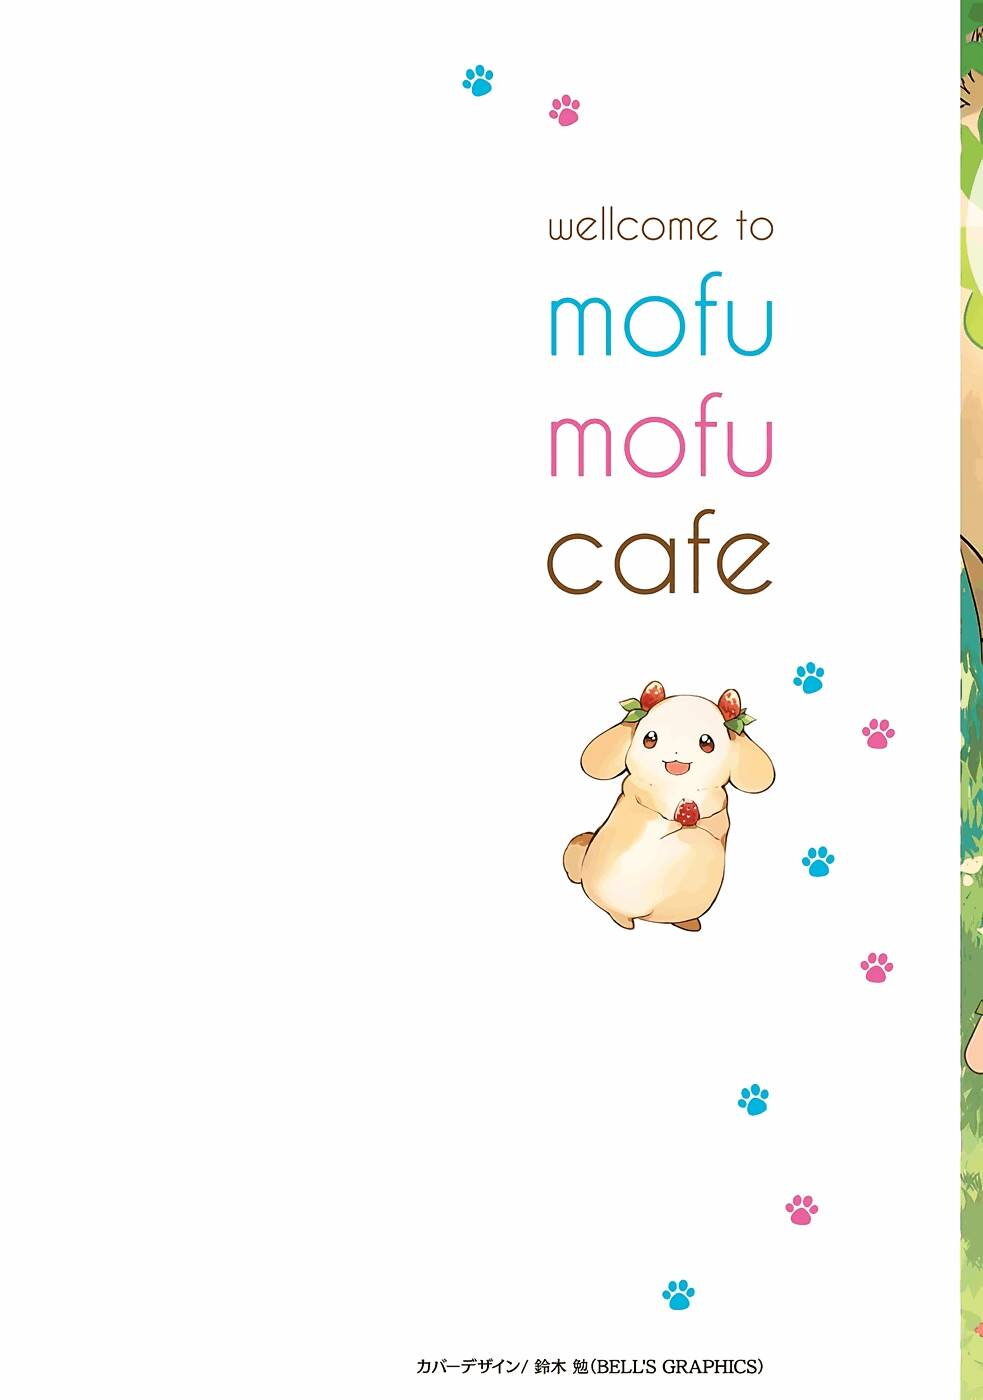 Isekai Mofumofu Cafe 6 02